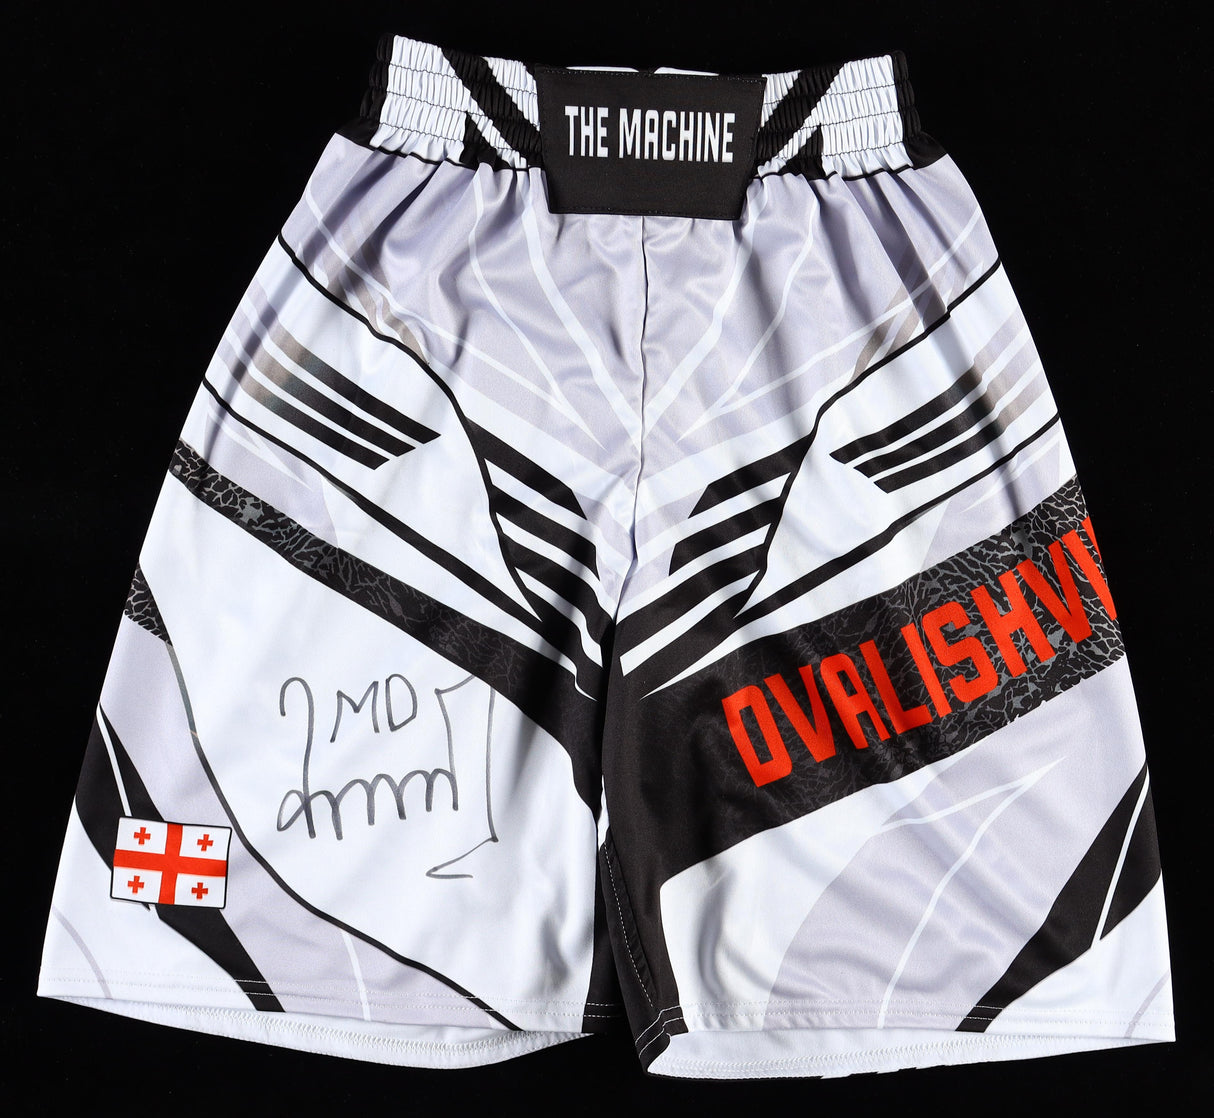 Merab Dvalishvili "The Machine" Signed UFC Fight Shorts (Beckett)